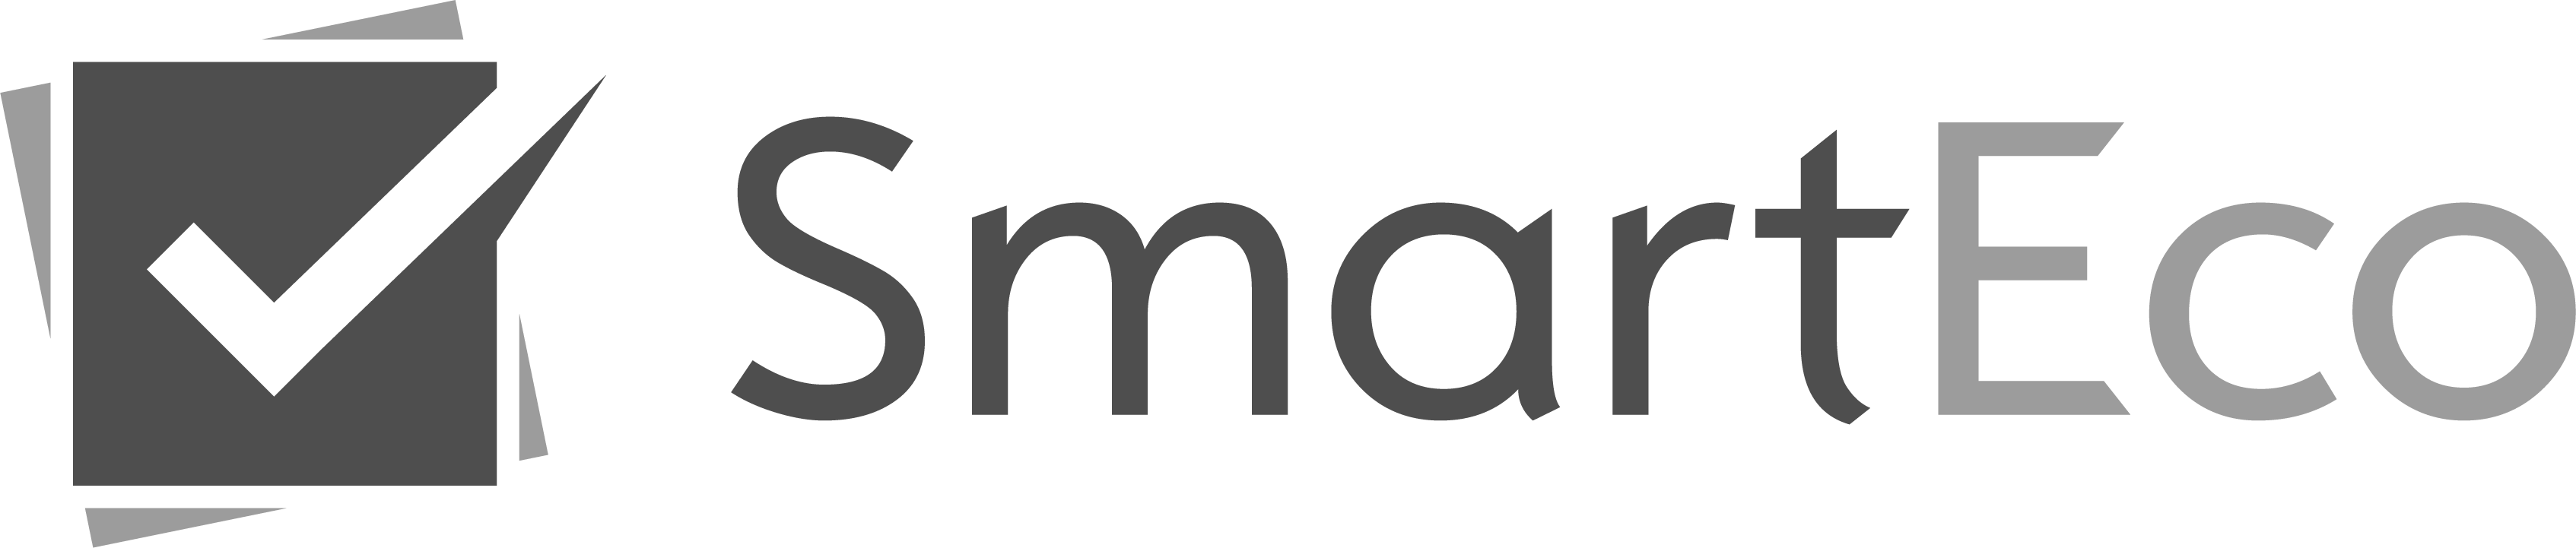 Smarteco logo gray